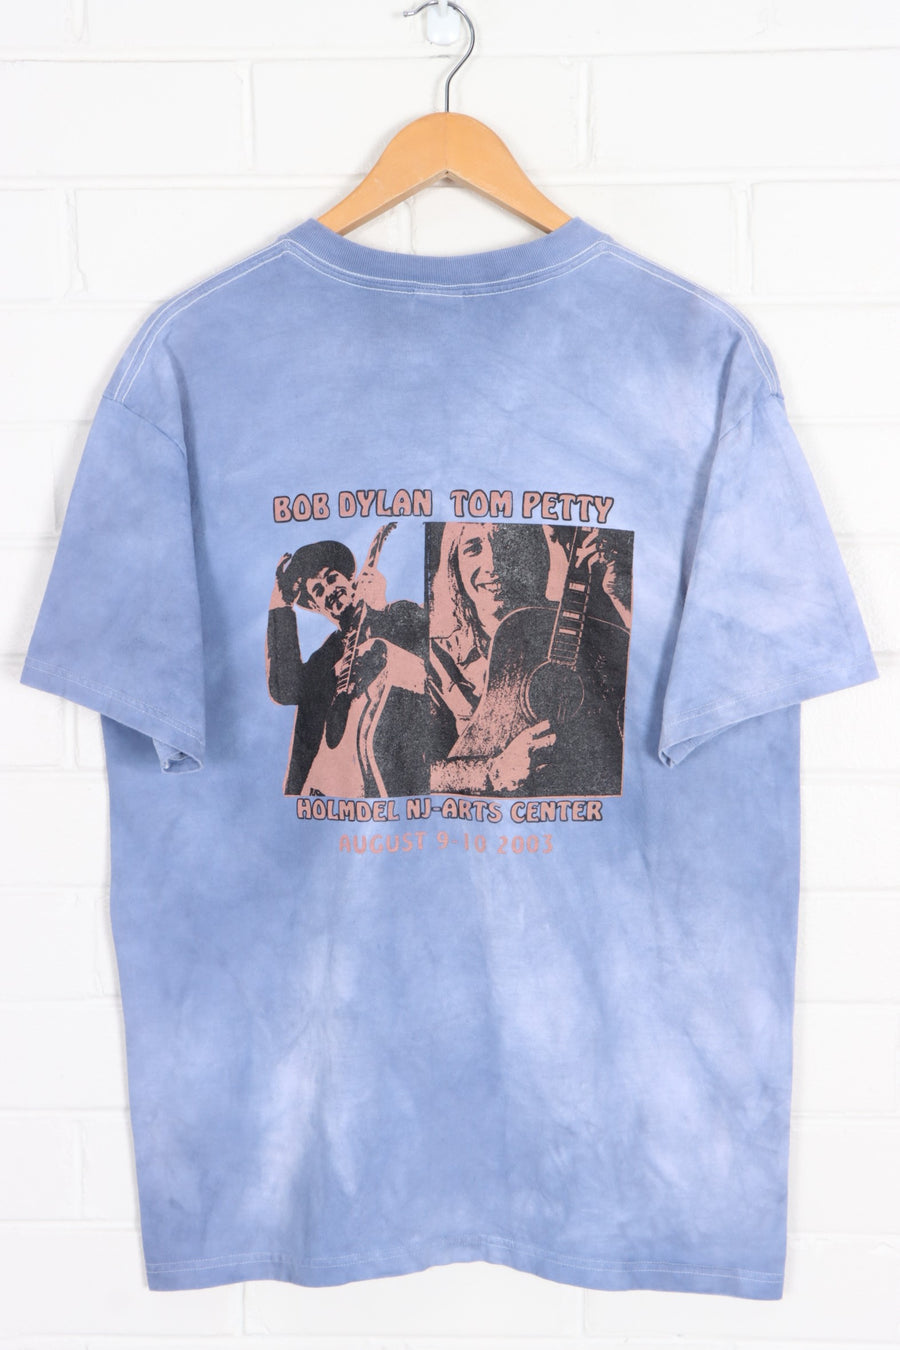 Bob Dylan Tom Petty 2003 Front Back Tie Dye Shirt (L)